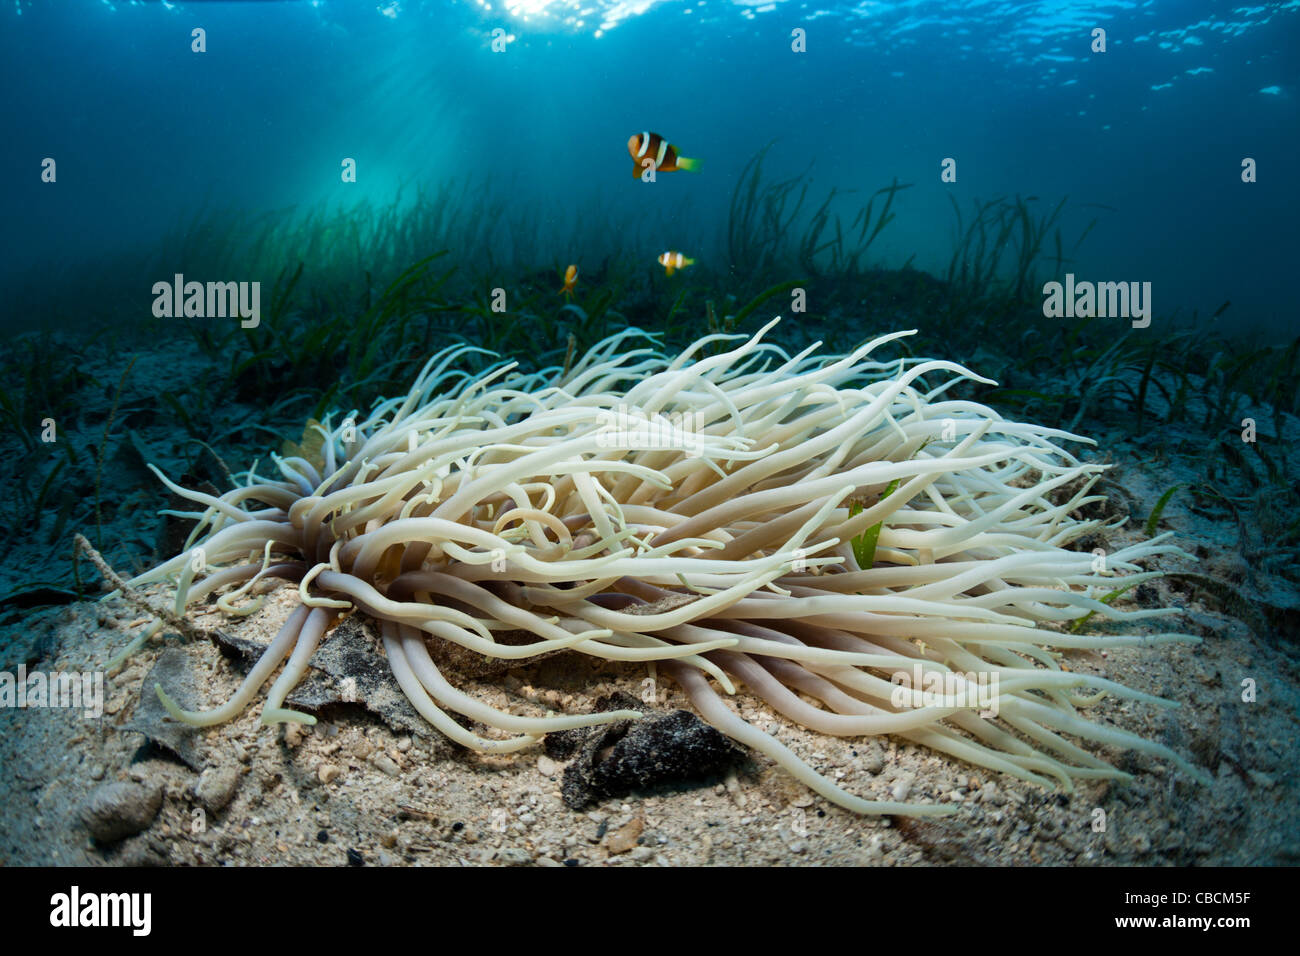 Cuoio anemone marittimo con Clarks Anemonefish nelle praterie di fanerogame Heteractis crispa Amphiprion clarki, Cenderawasih Bay Indonesia Foto Stock